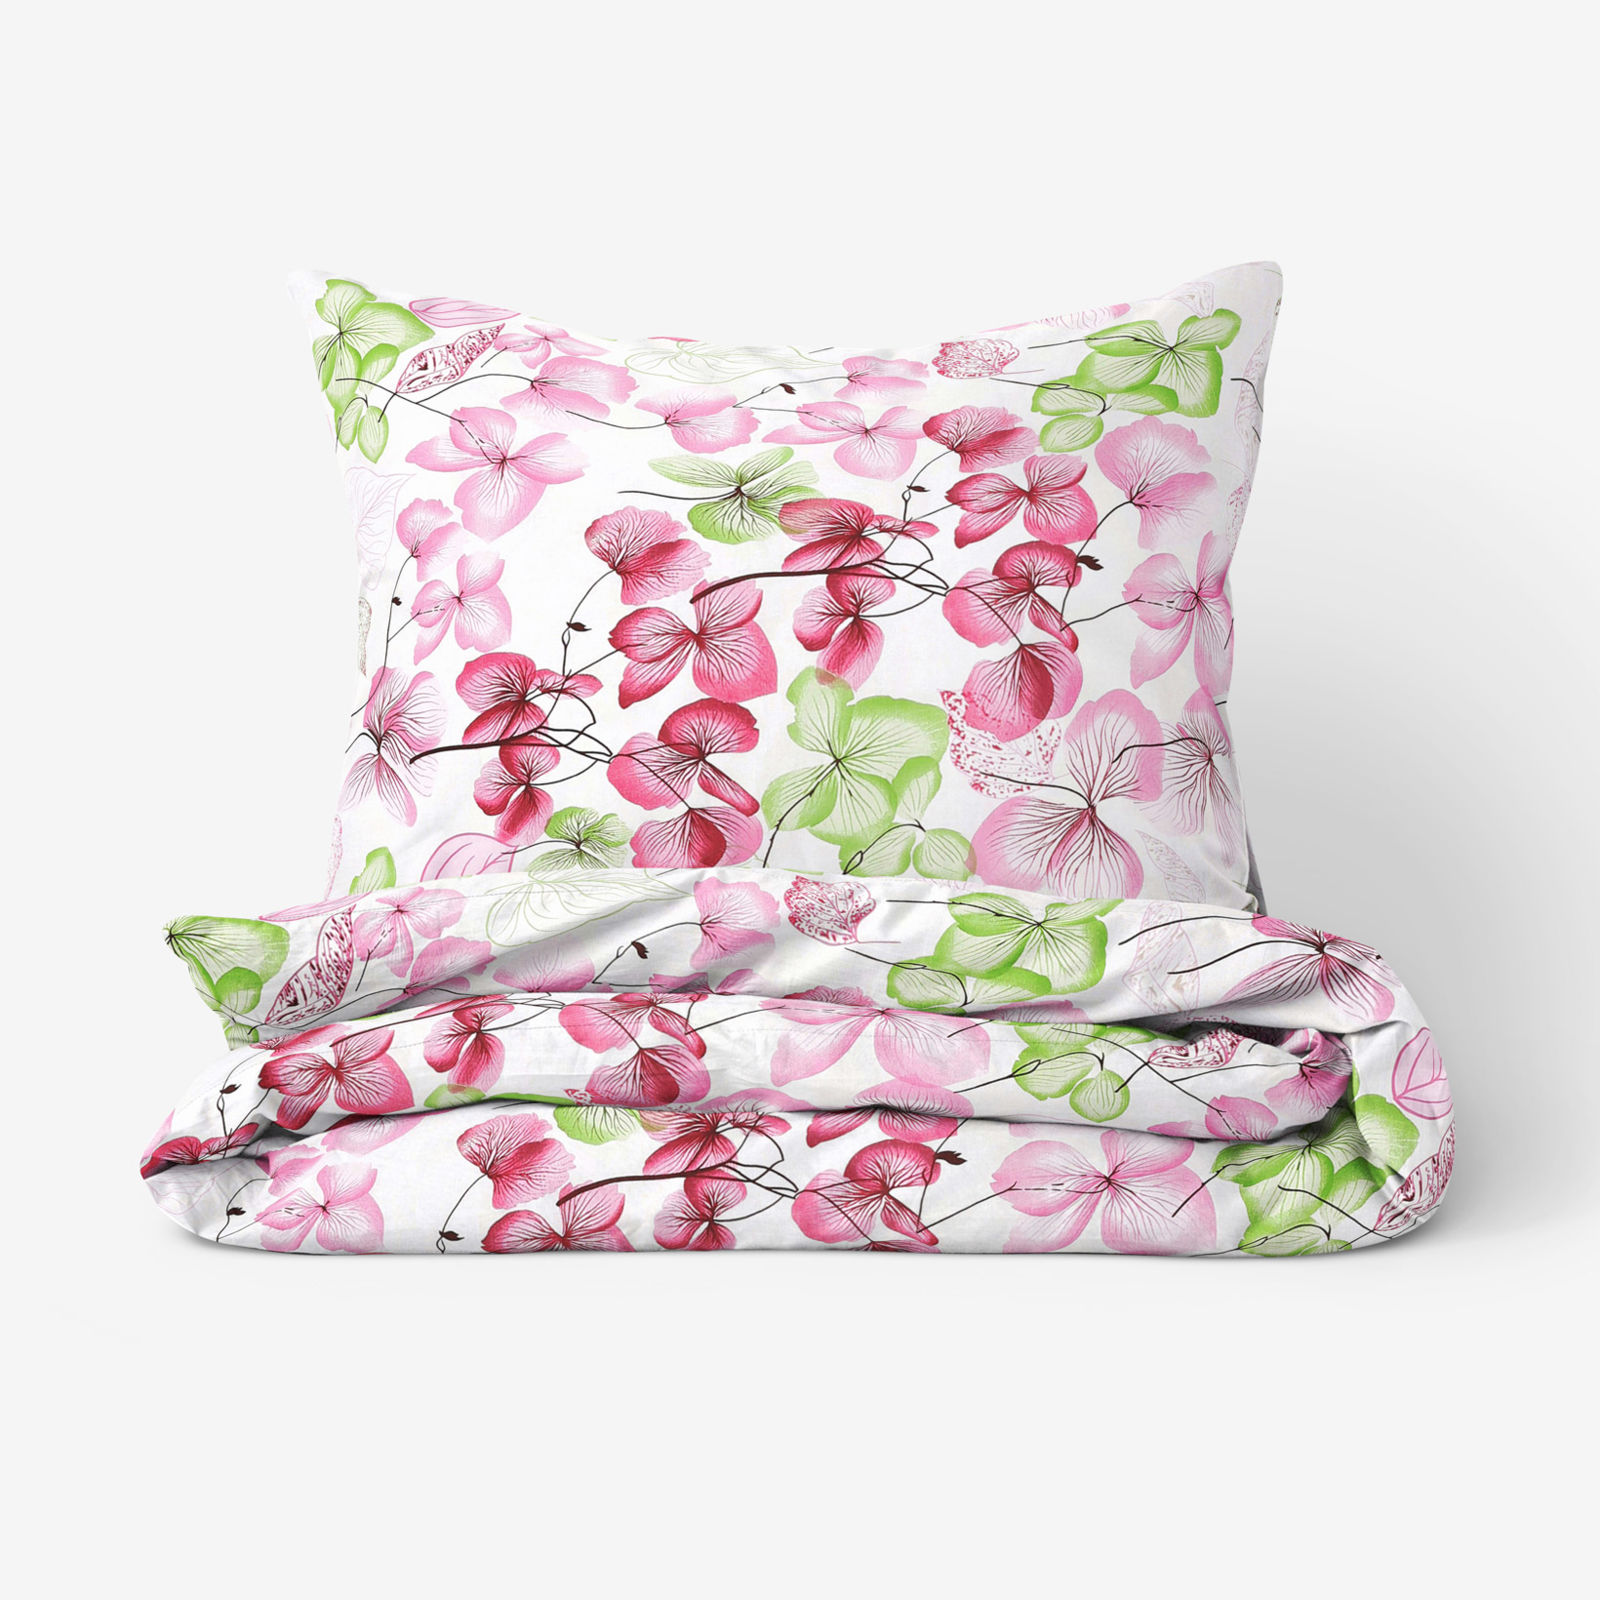 Bavlnené posteľné obliečky - ružovo-zelené kvety s listami